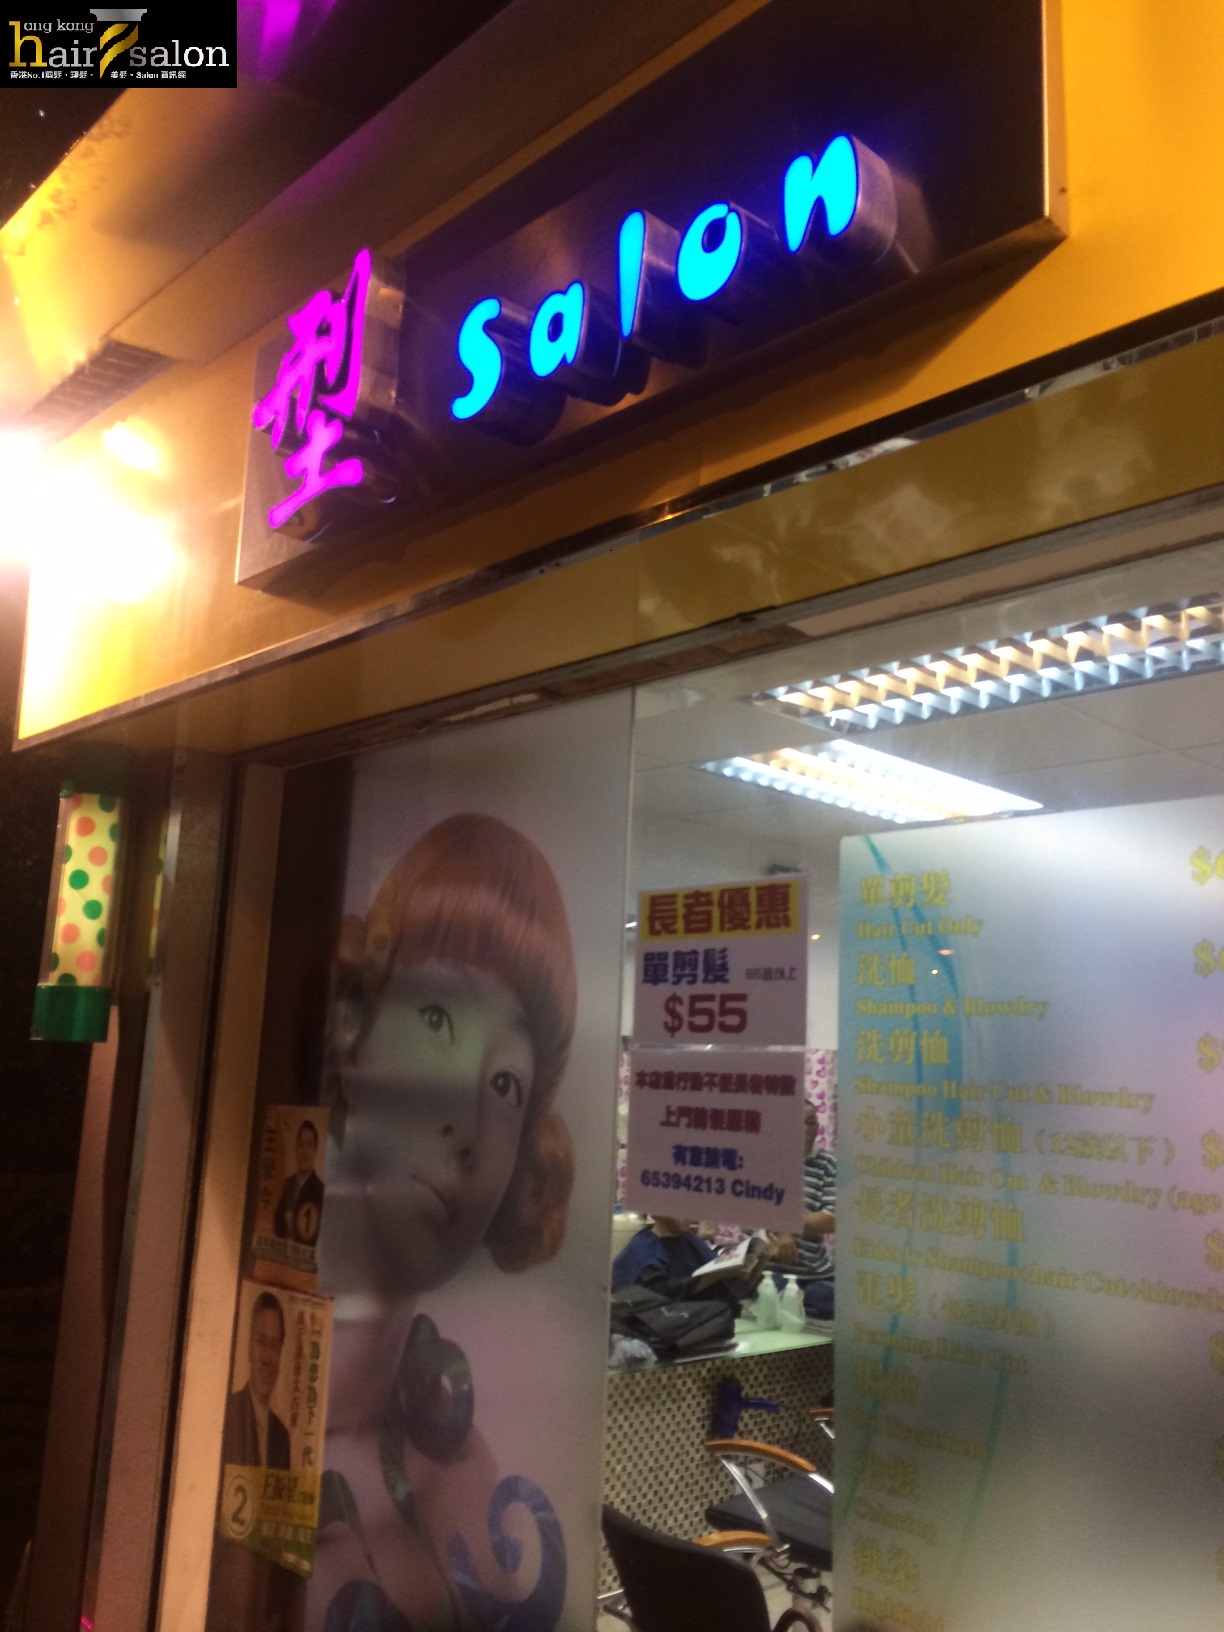 髮型屋: 型 Salon